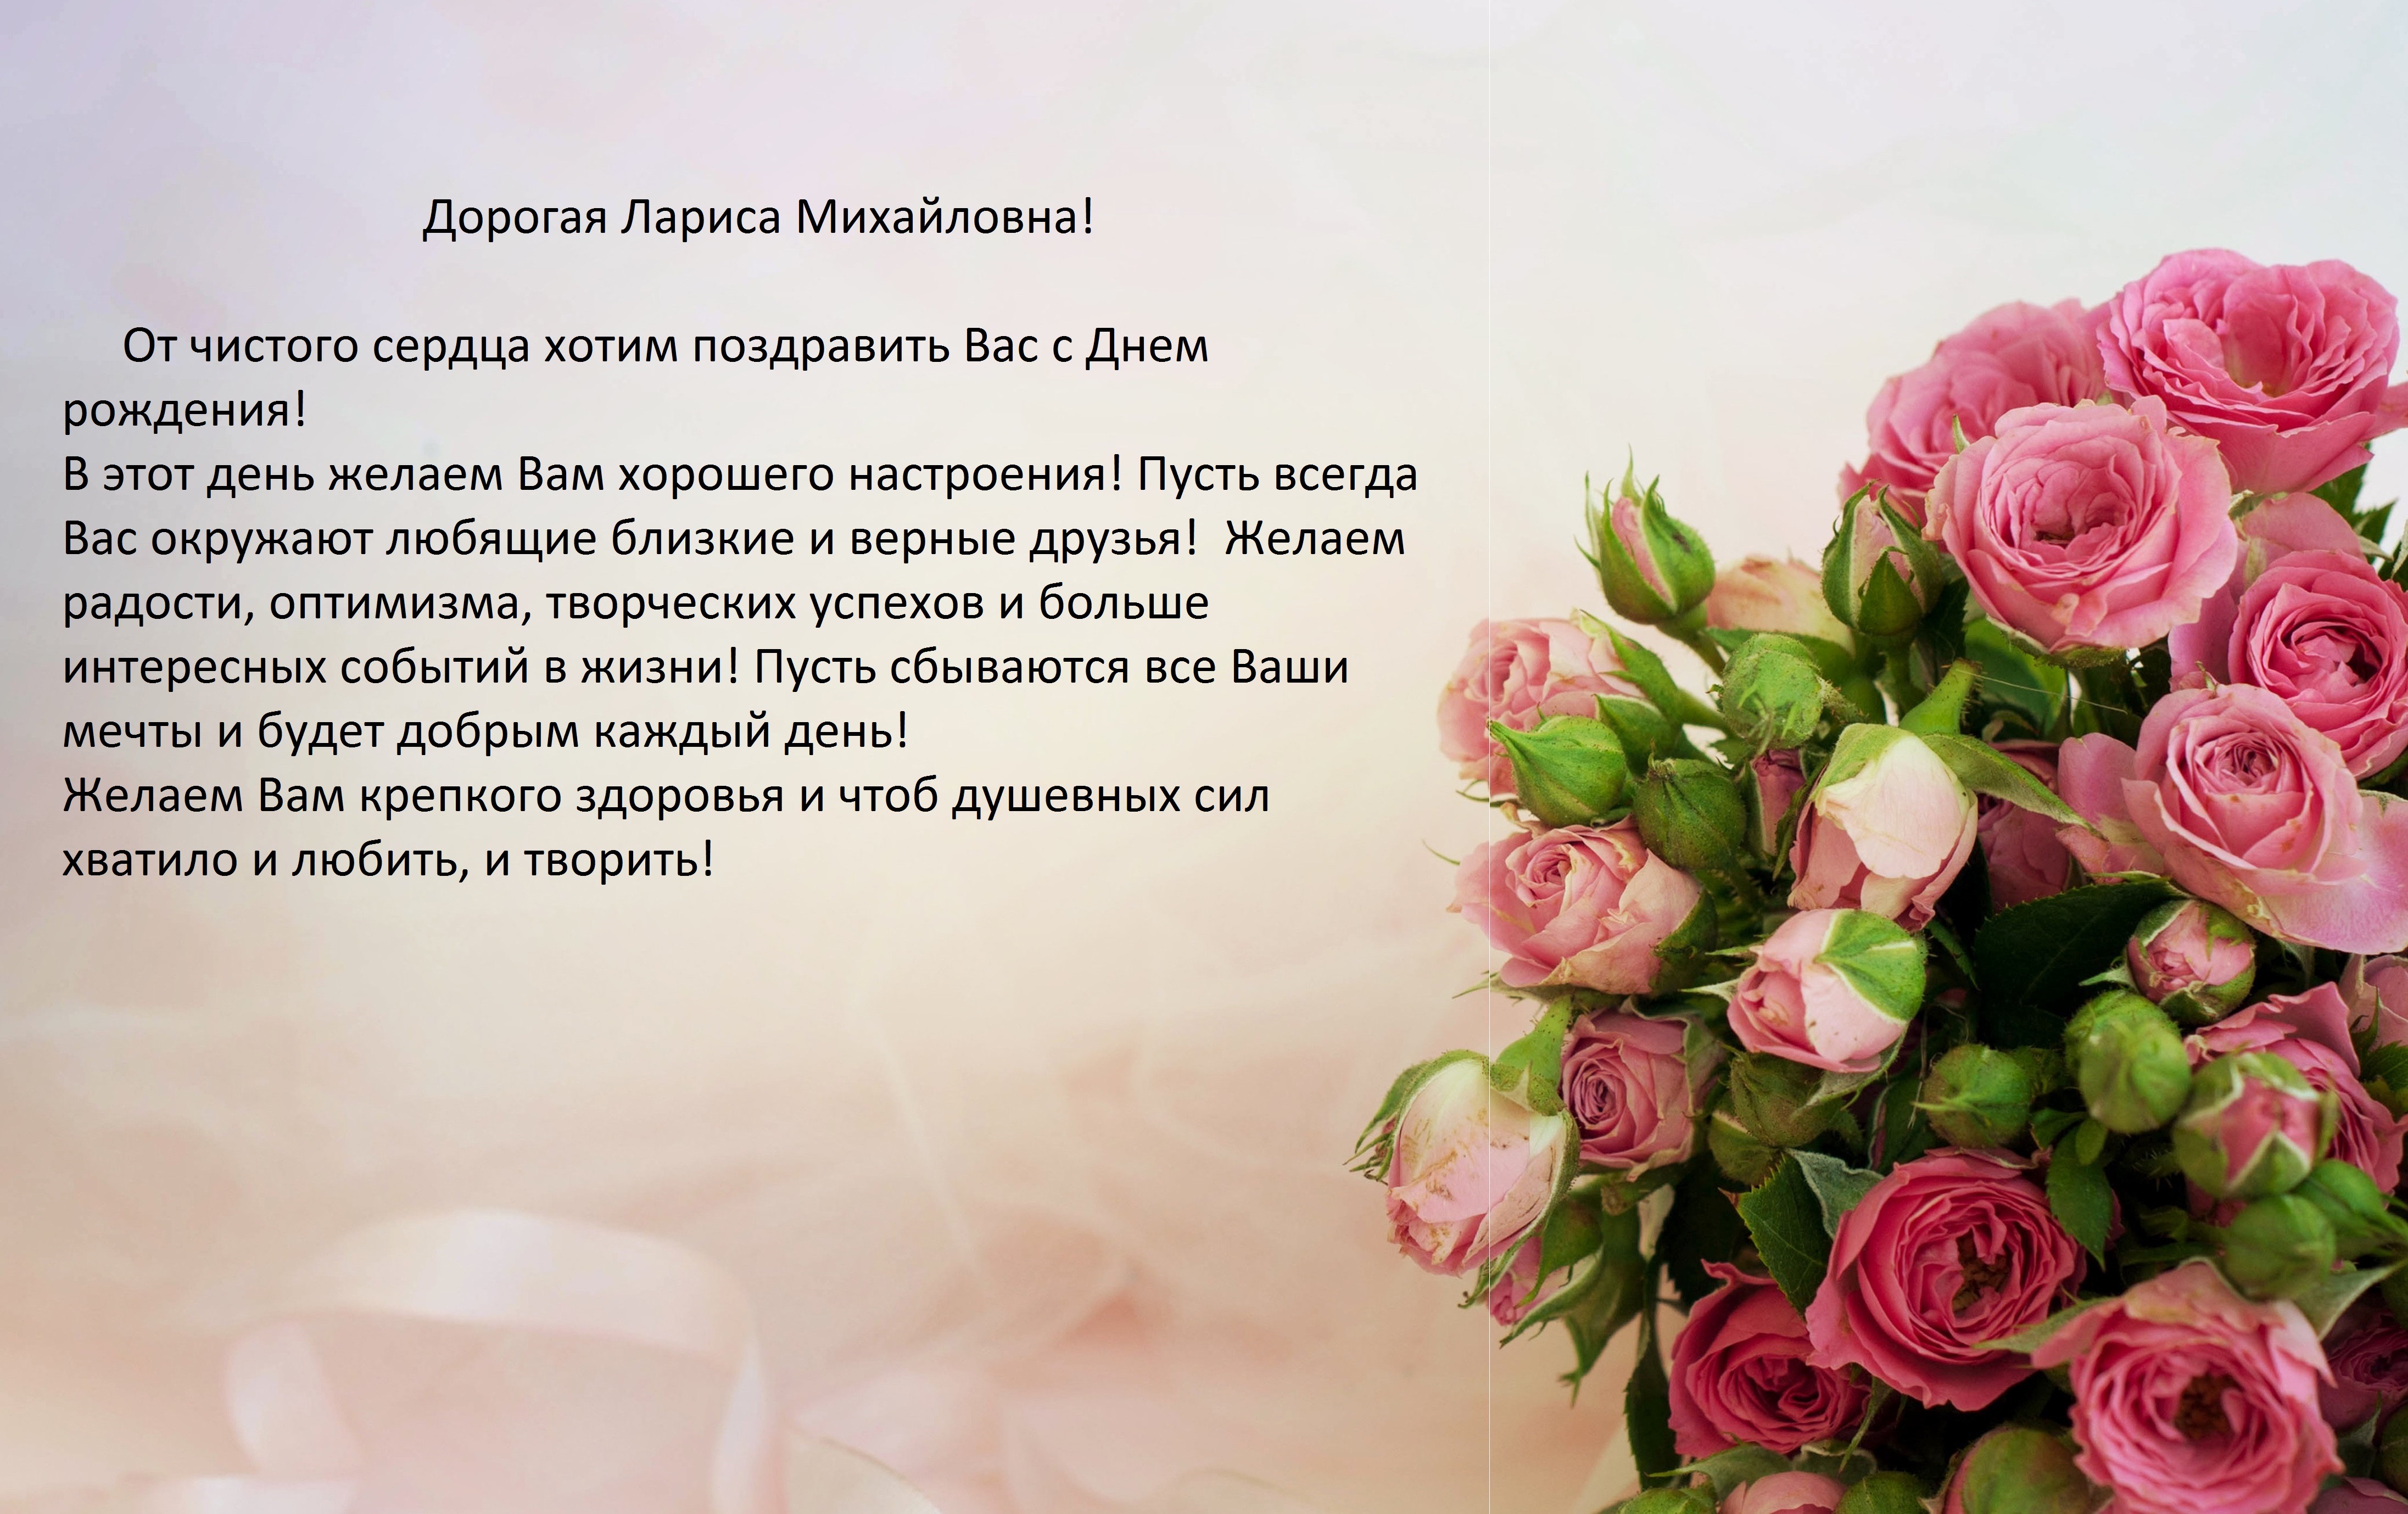 Сегодня, 12 мая, с удовольствием хотим поздравить с Днём  рождения Ларису Михайловну Алексееву, члена совета нашей школы